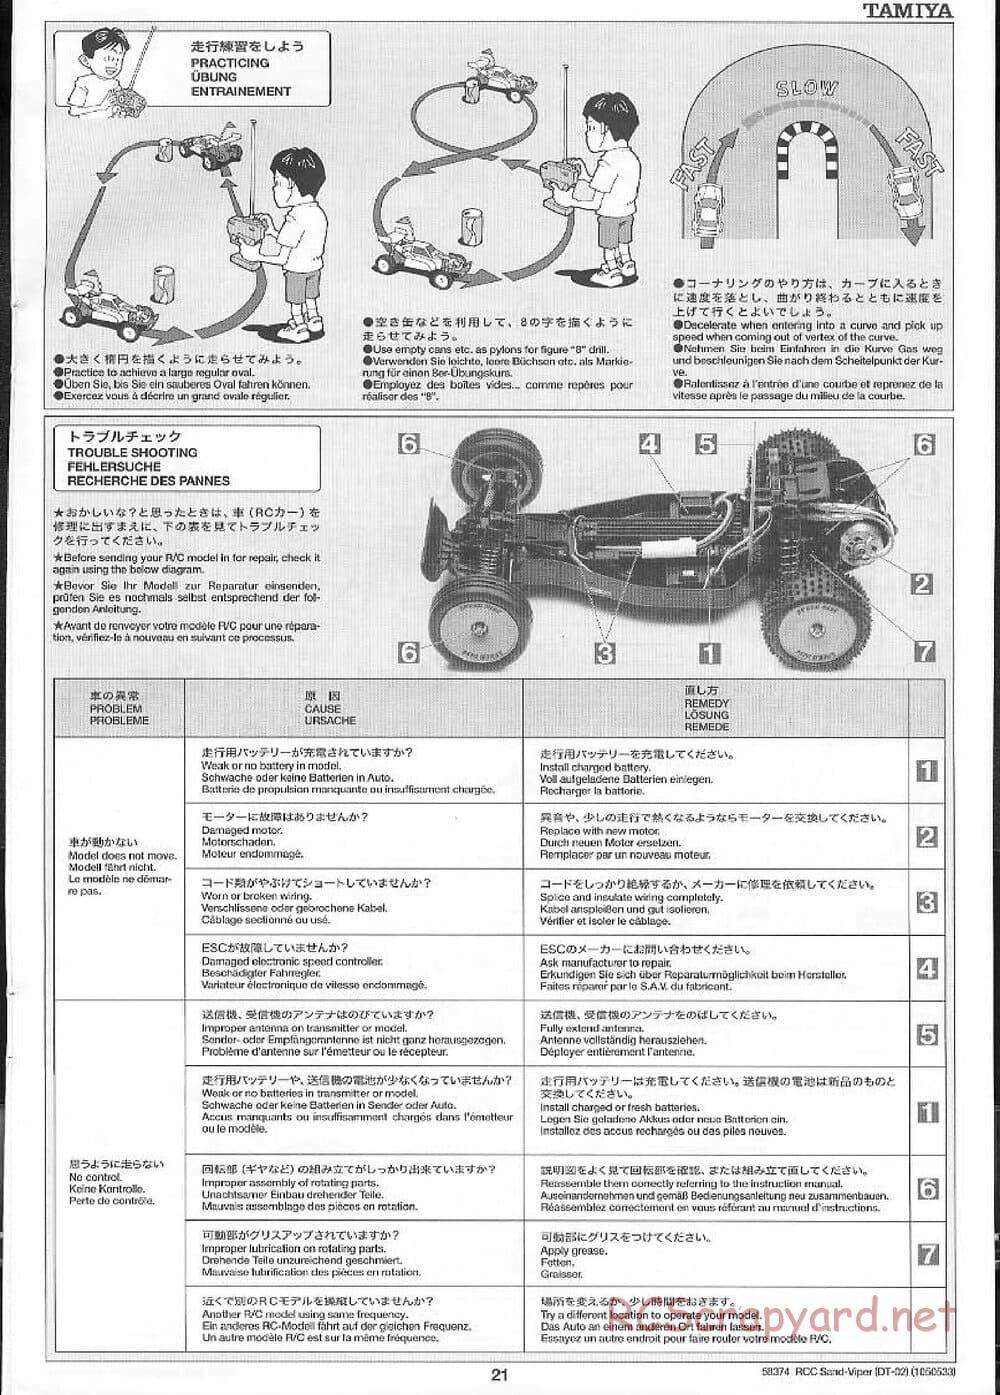 Tamiya - Sand Viper Chassis - Manual - Page 21